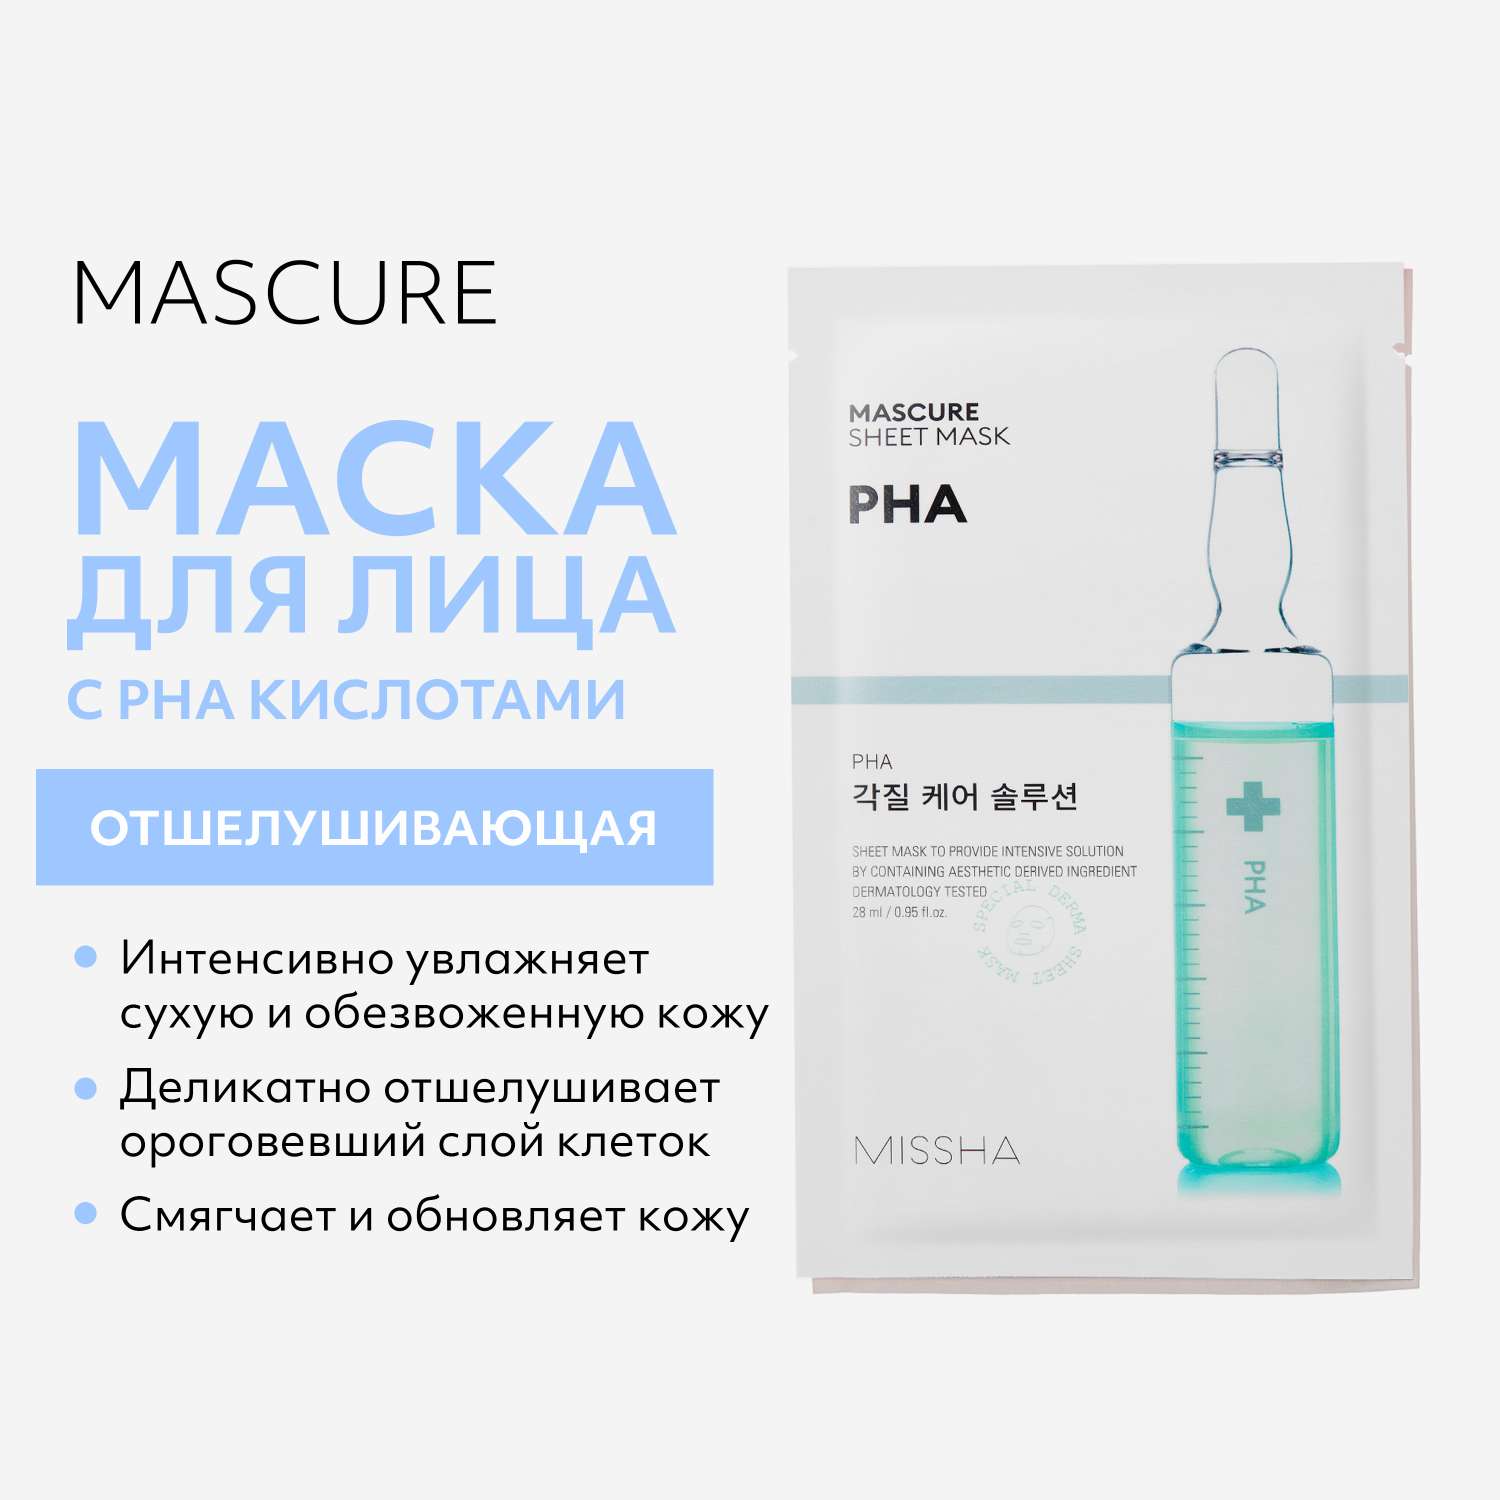 Маска тканевая MISSHA Mascure отшелушивающая для лица с PHA кислотами для тонкой и чувствительной кожи 28 мл - фото 2